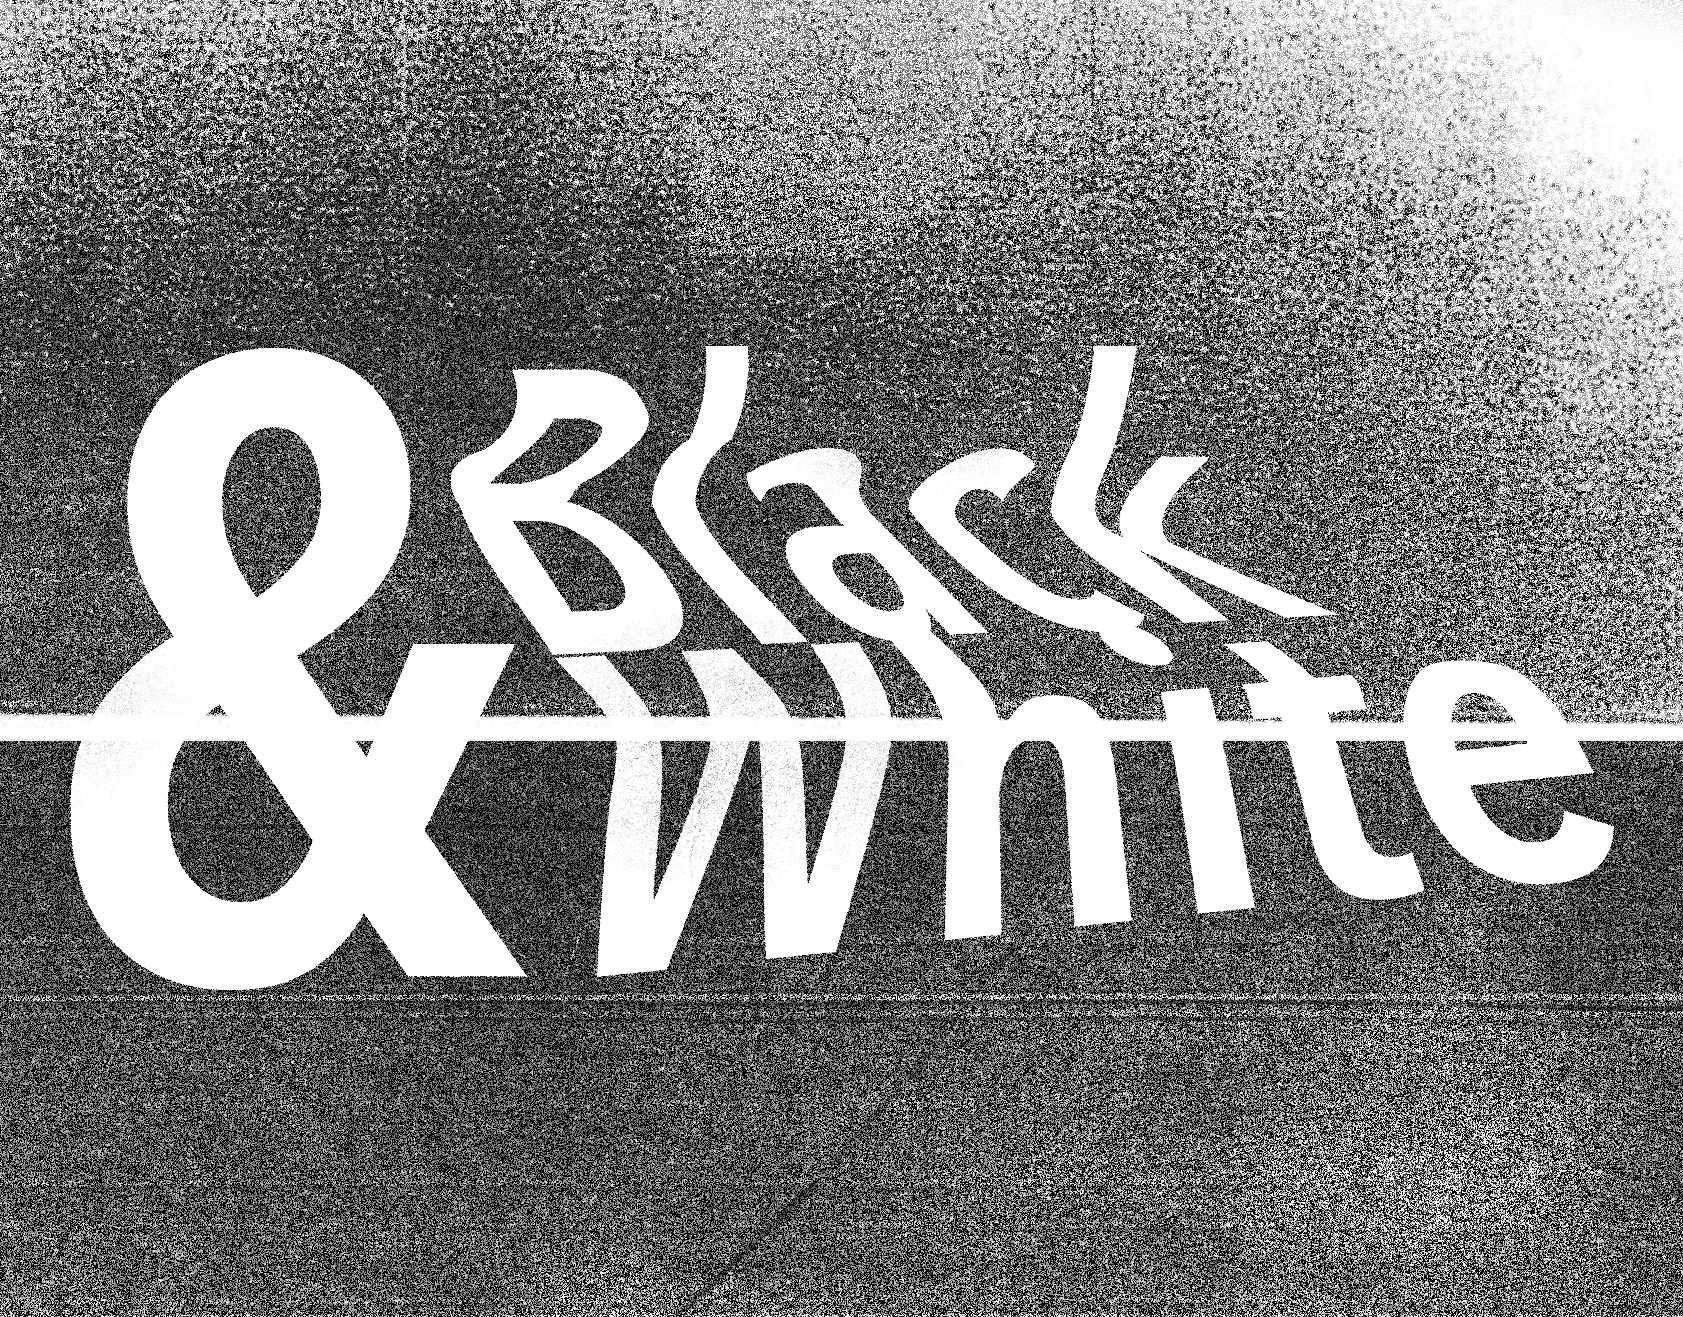 NYX Awards 2018 Winner - Black & White